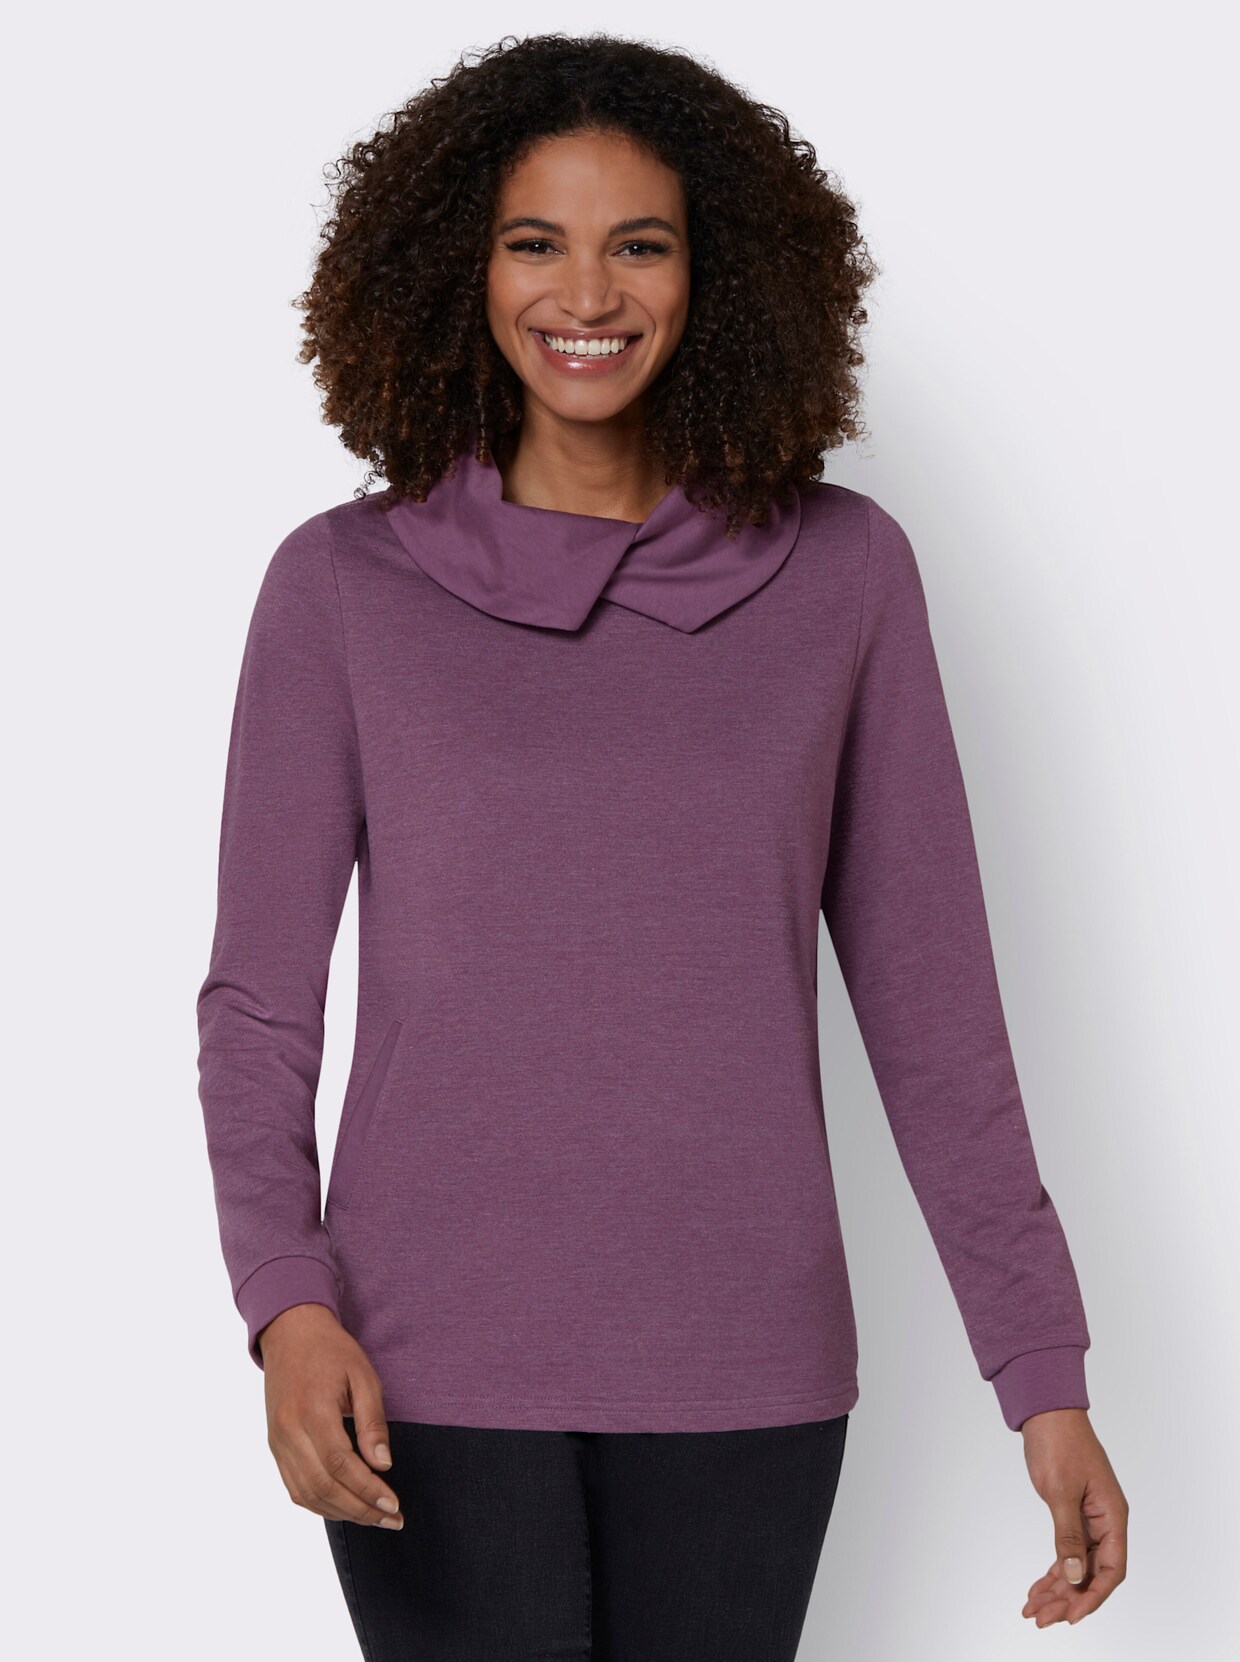 Sweatshirt - violett-weiß-meliert